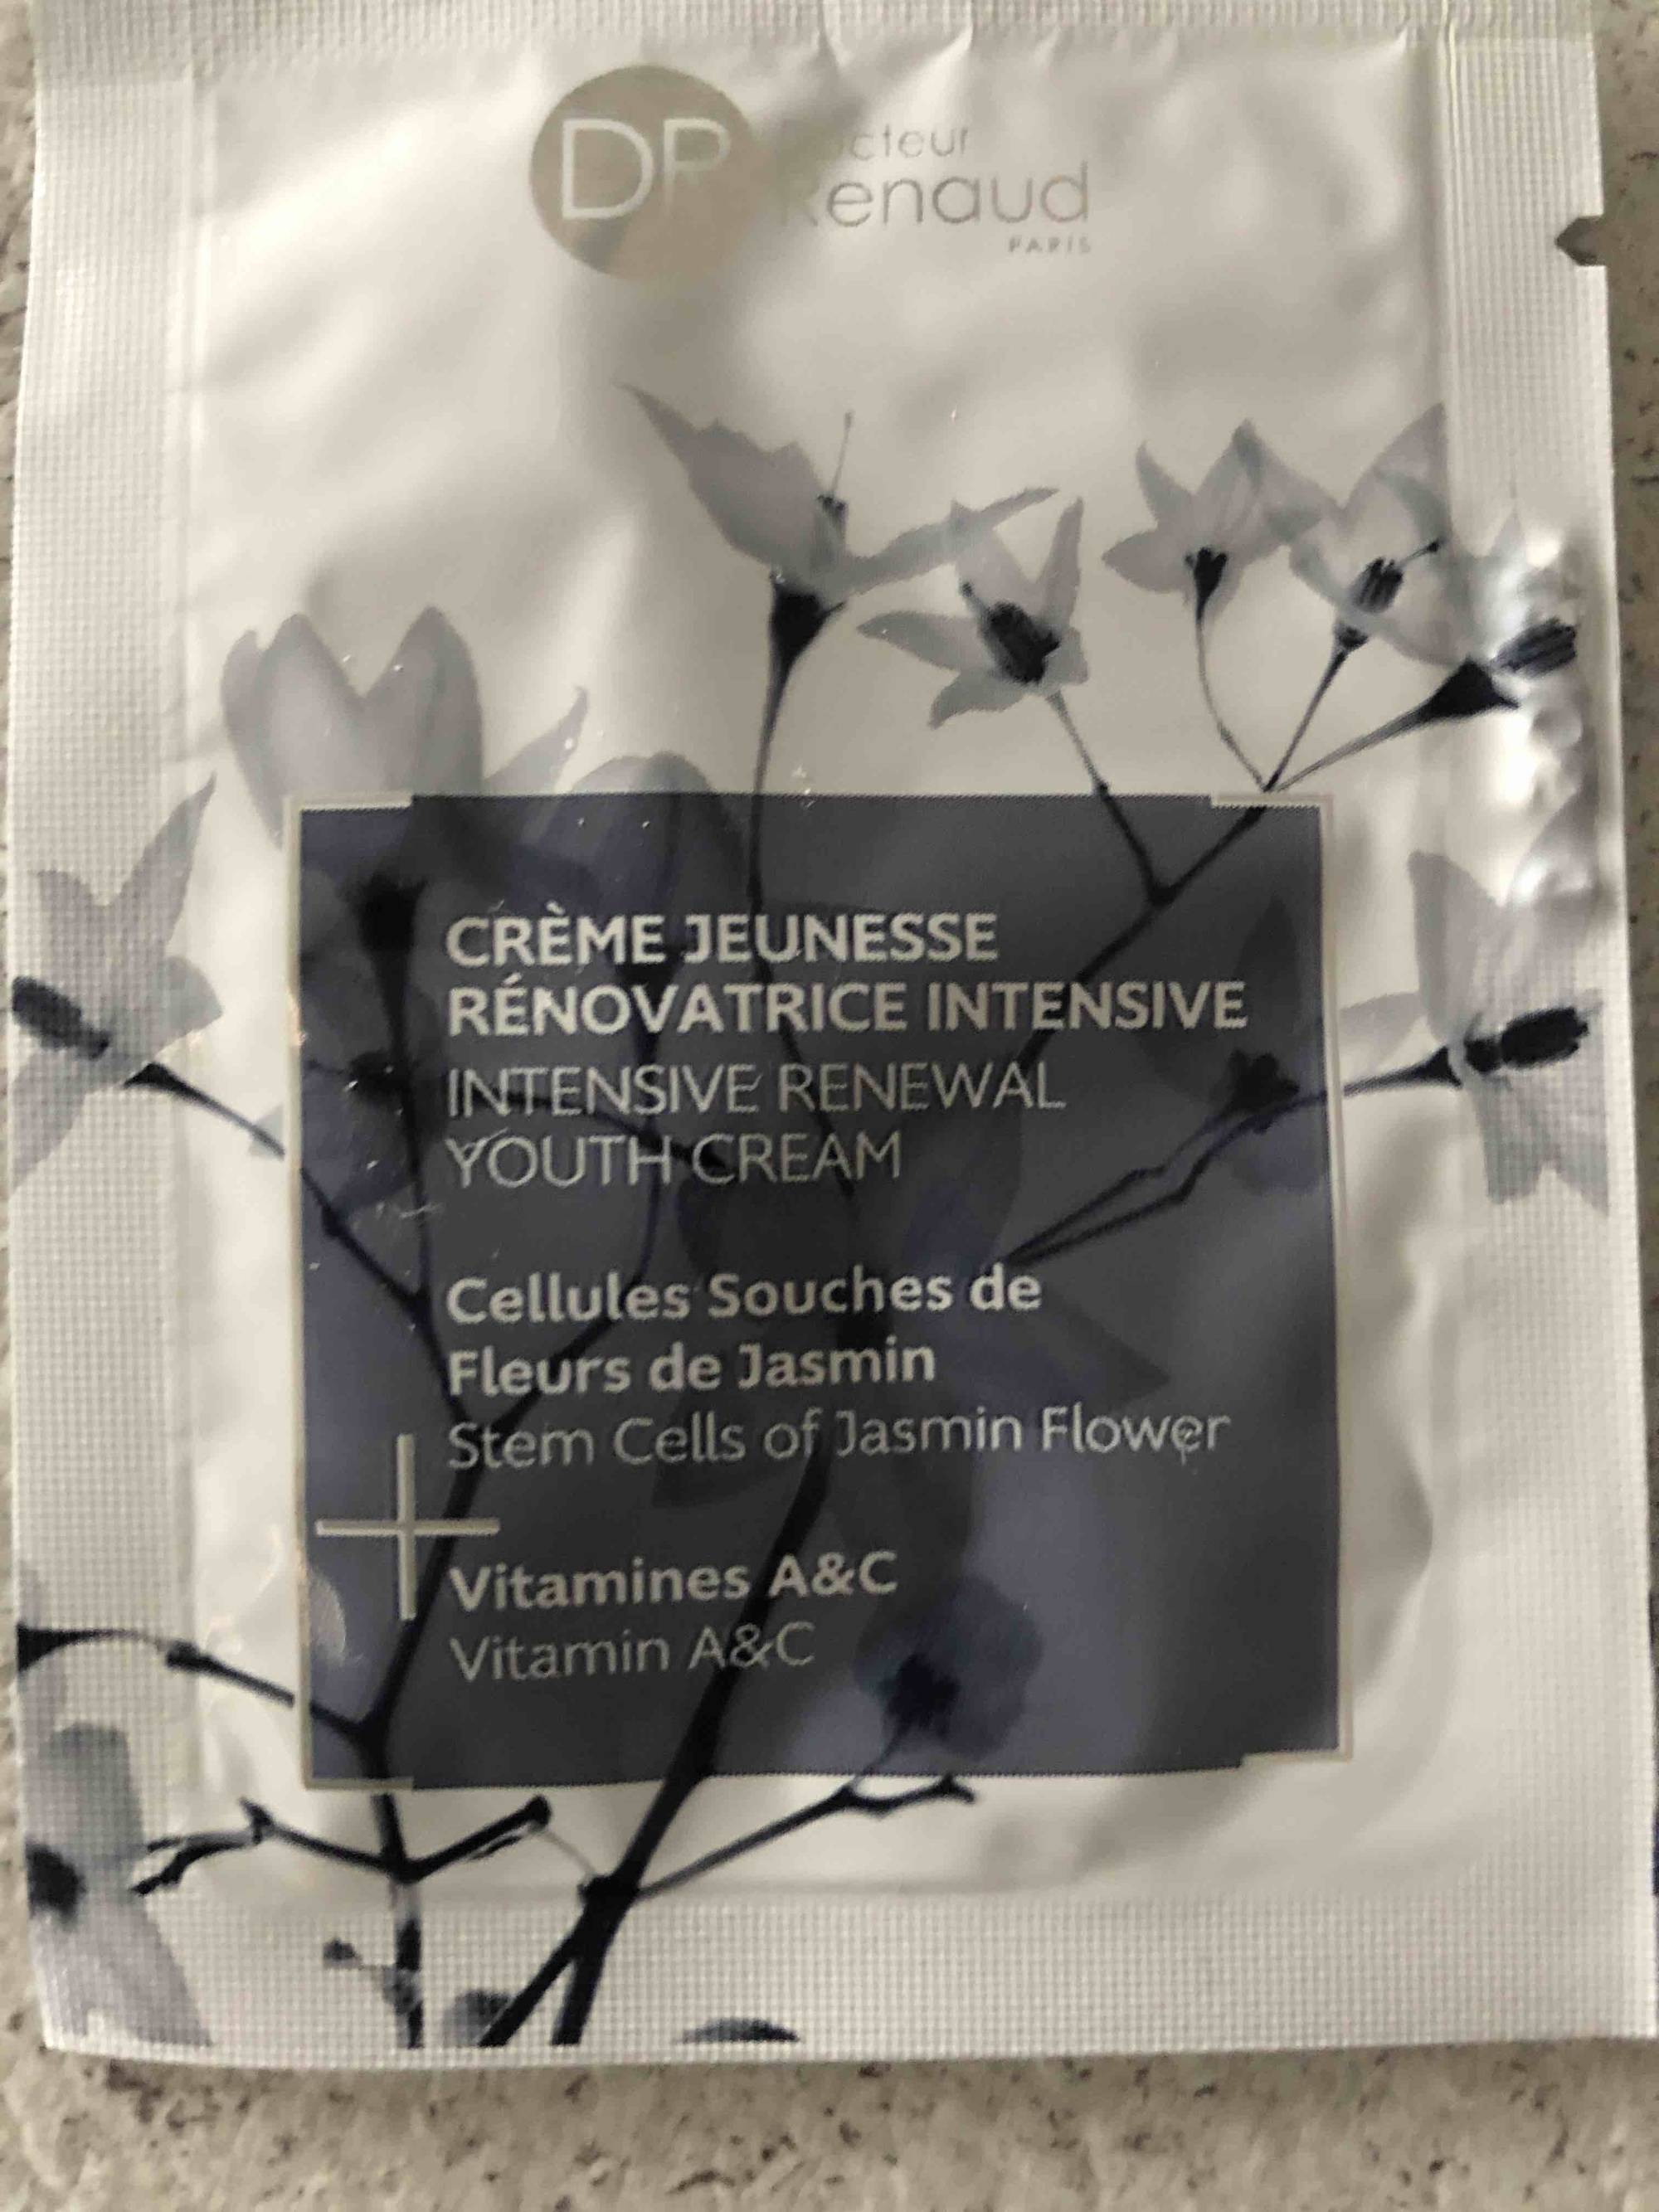 DOCTEUR RENAUD PARIS - Crème jeunesse rénovatrice intensive